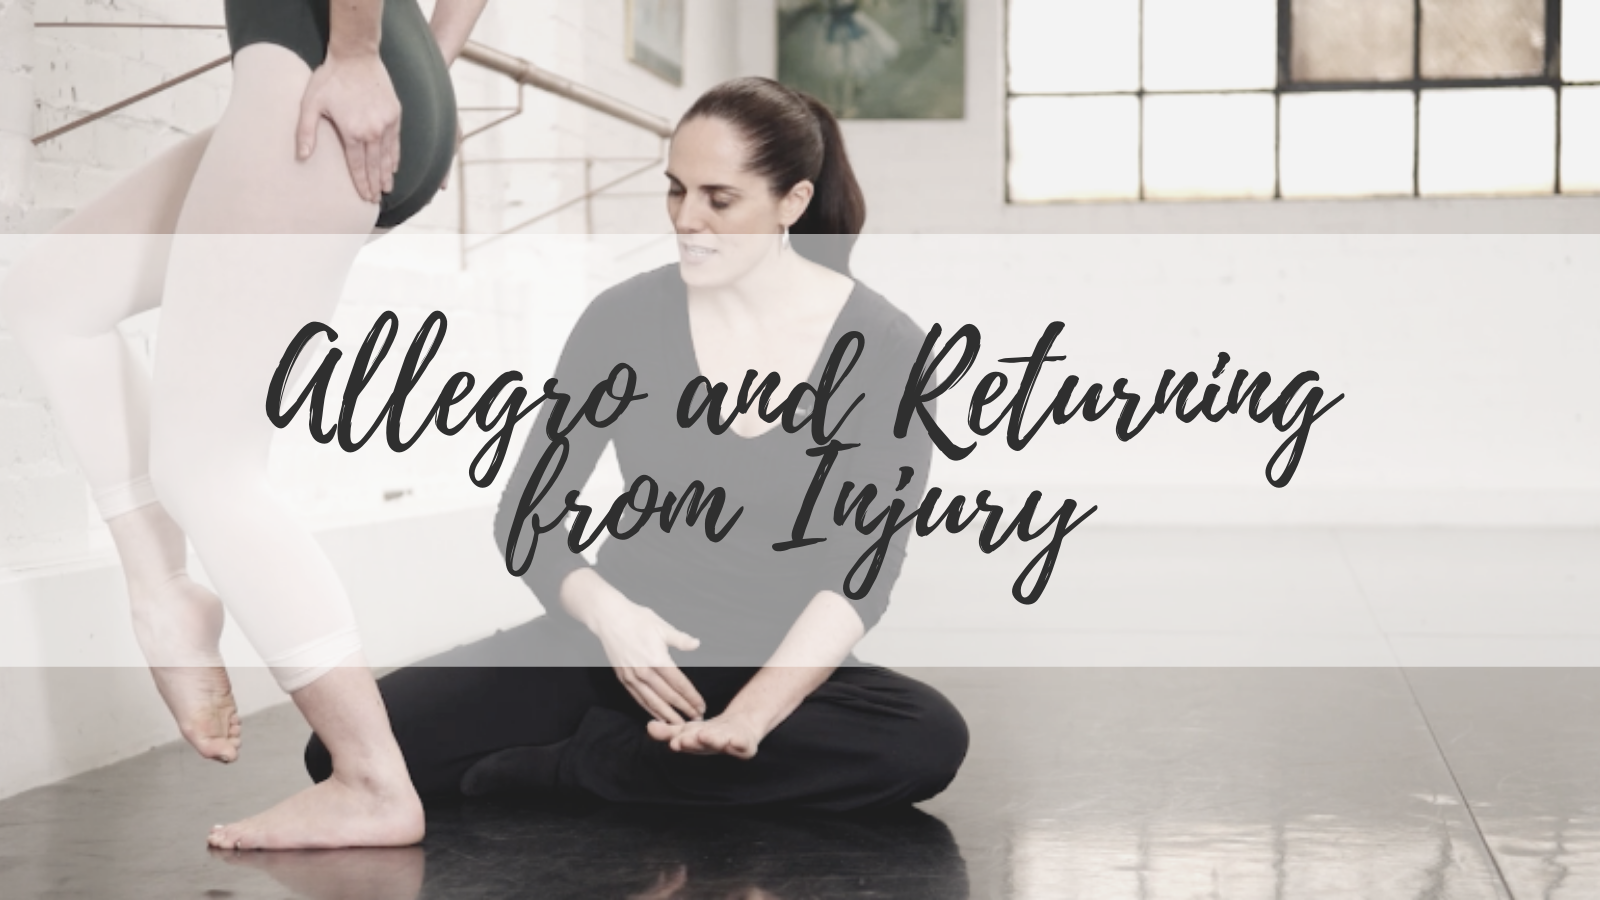 Allegro and Returning from Injury - L1 Thumbnail - Teacher Training - Lisa Howell - The Ballet Blog